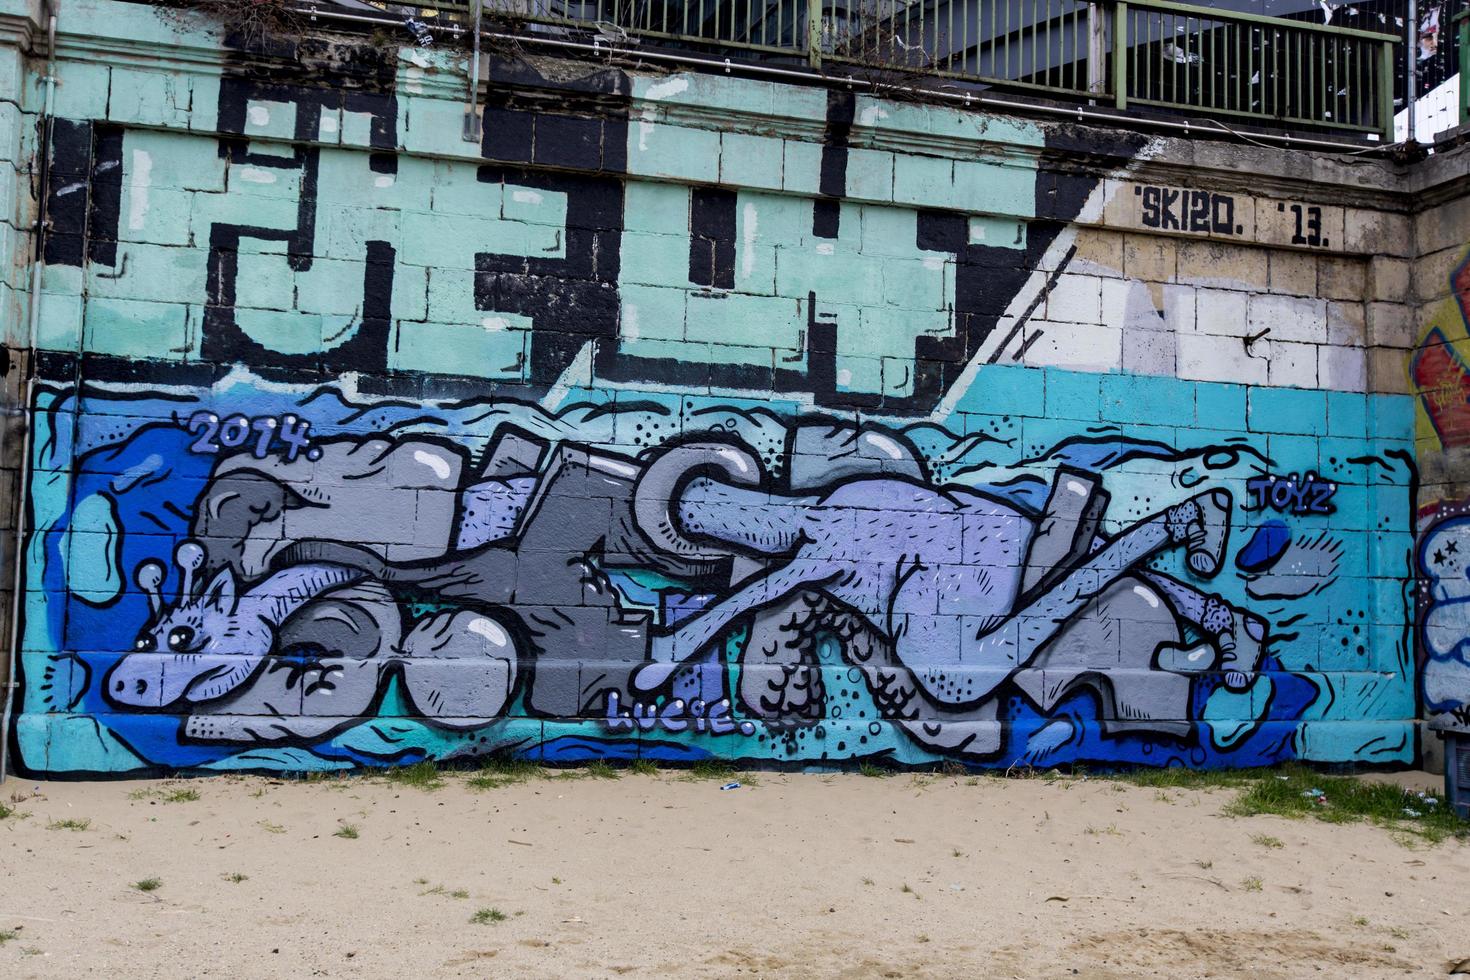 Wien, Österreich, 5. Februar 2014 - Blick auf Graffiti an der Wand in Wien. stadt wien mit projekt wienerwand vienna wall bietet jungen künstlern aus der graffiti-szene legale bereiche für ihre kunst. foto